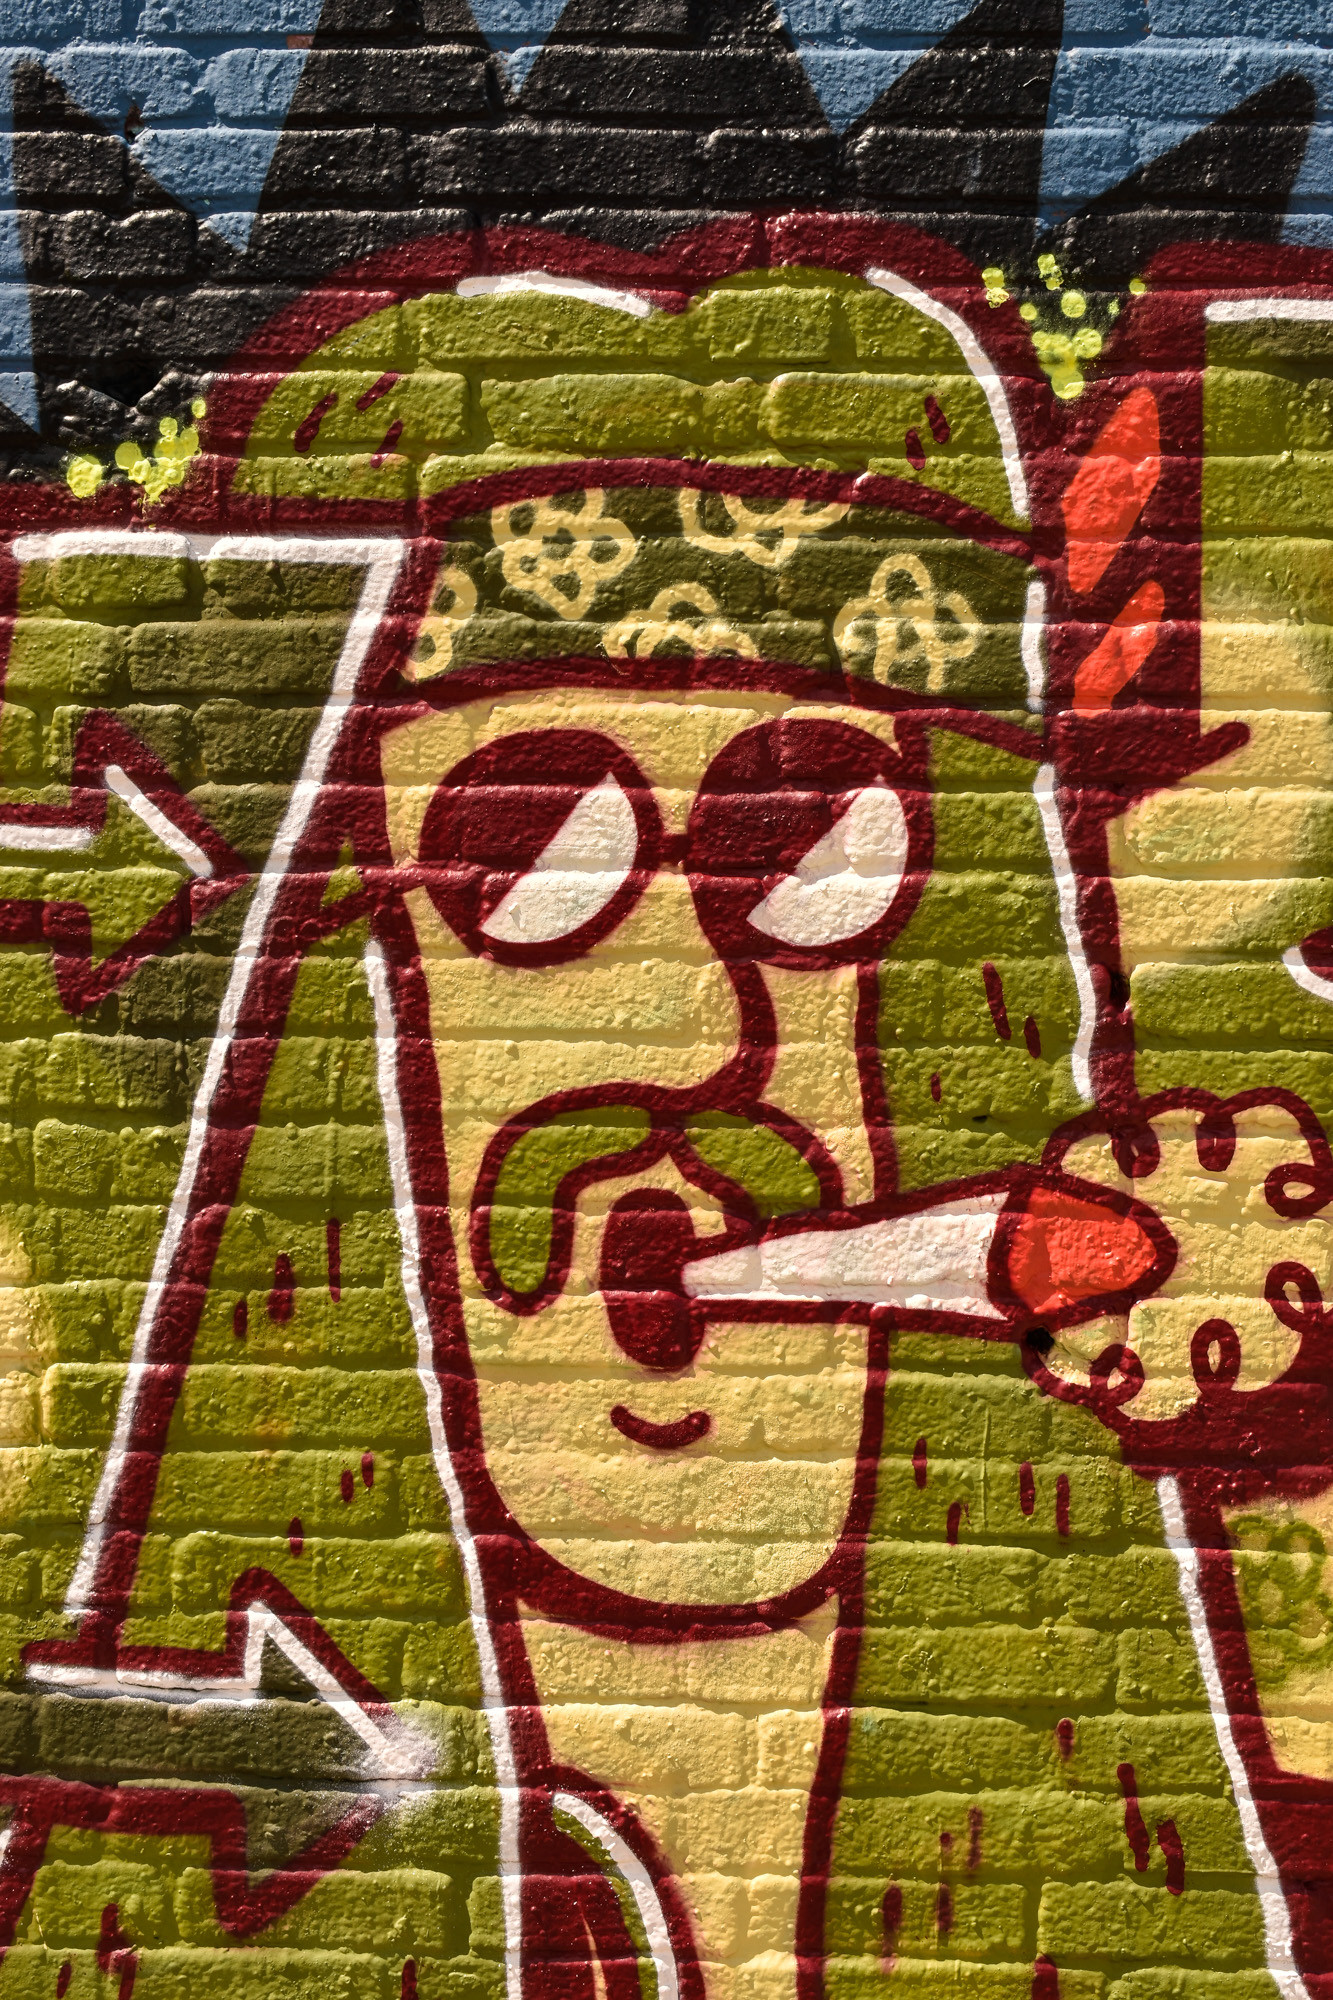 Graffiti urban art on wall in Amsterdam